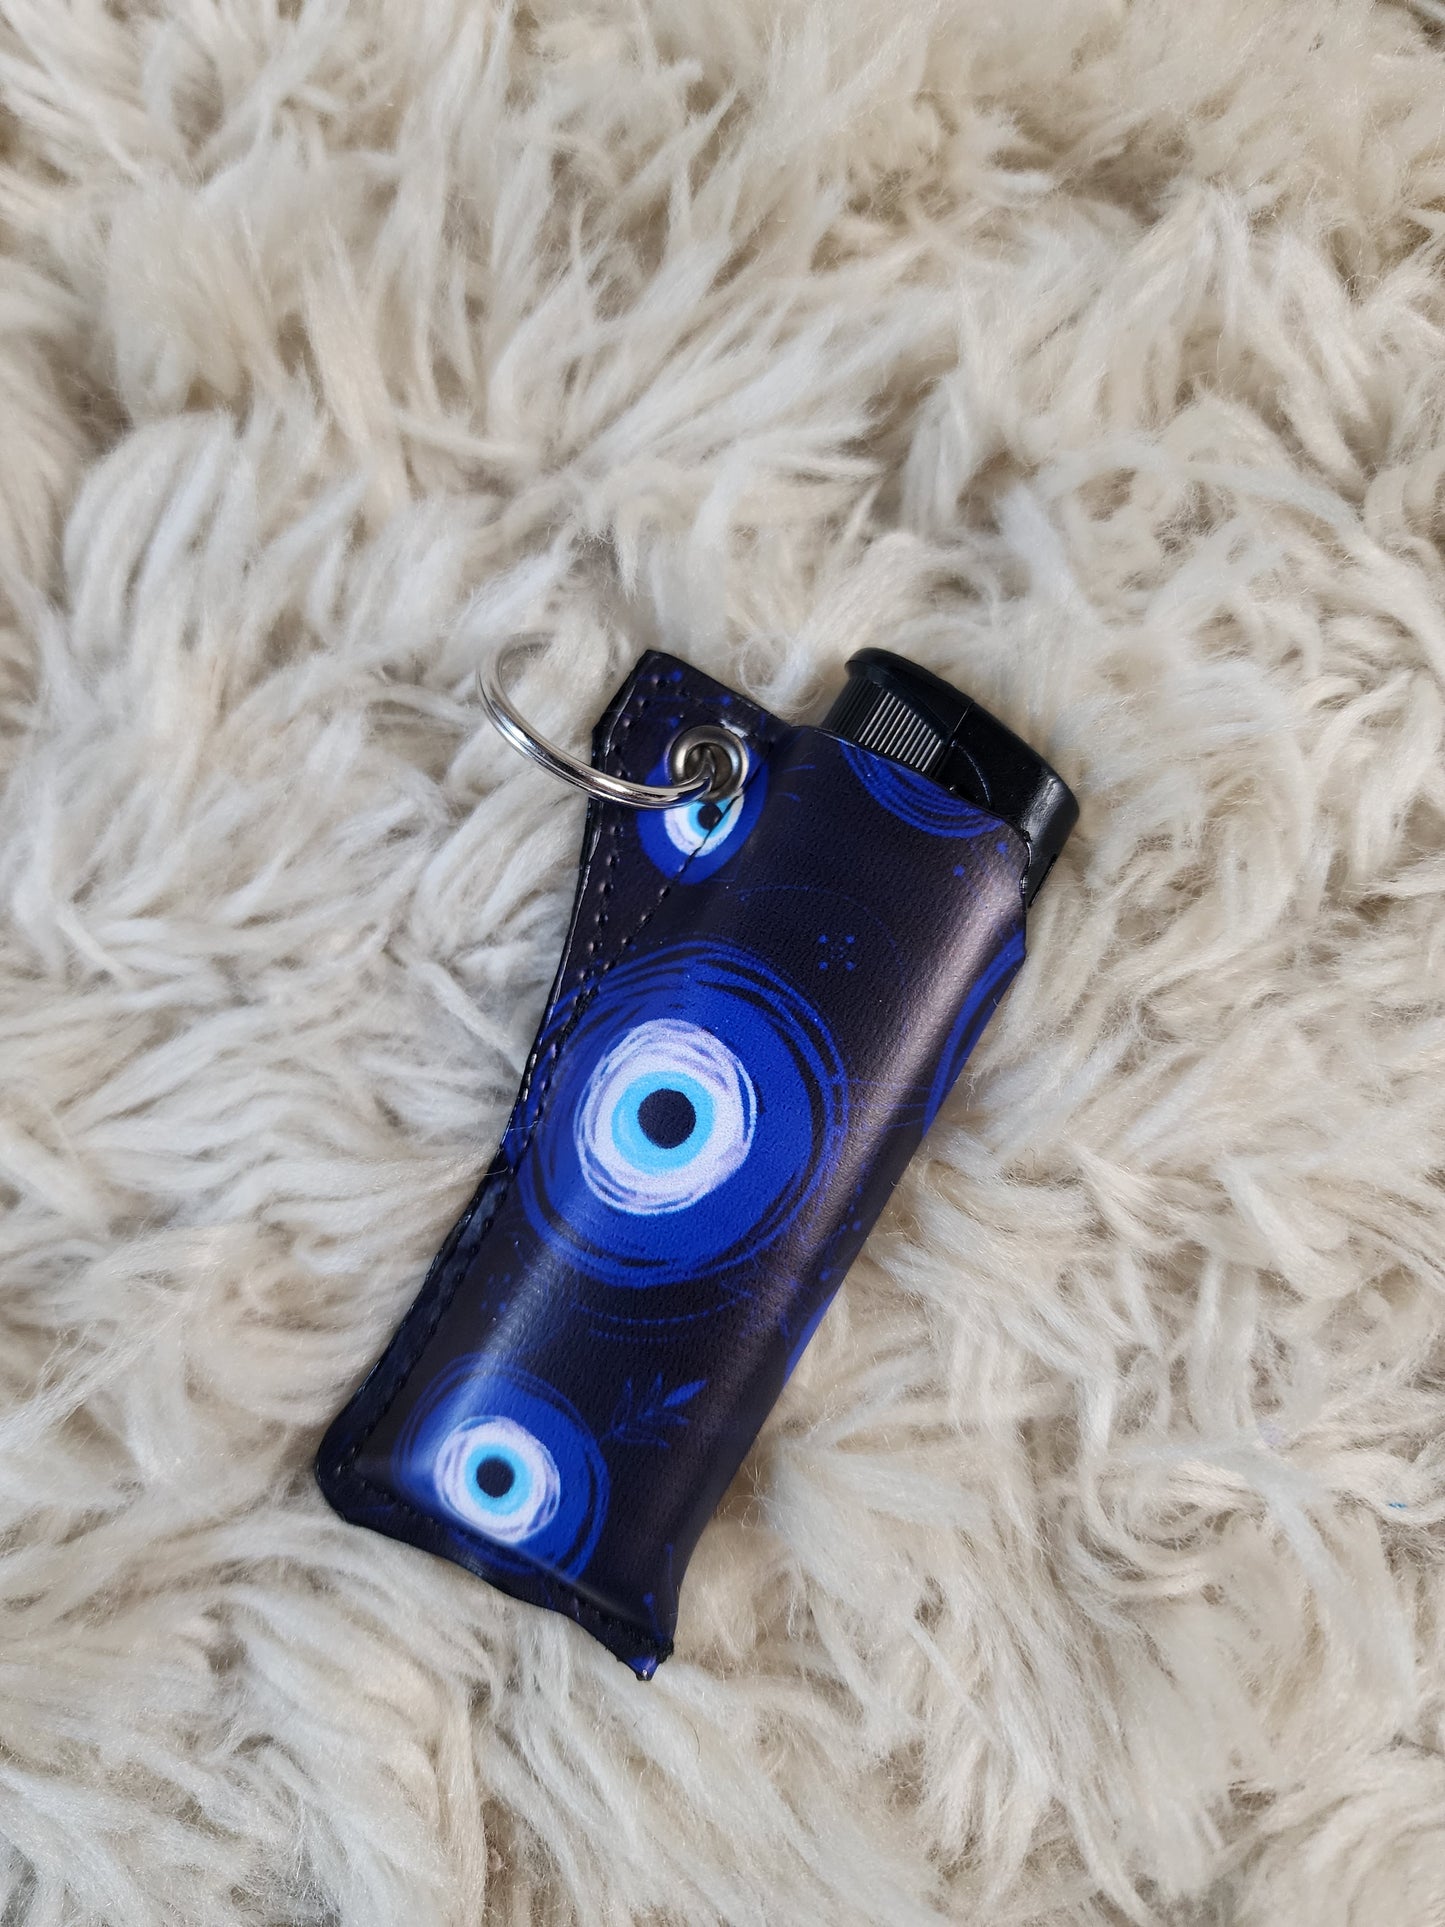 Evil eye keychain lighter